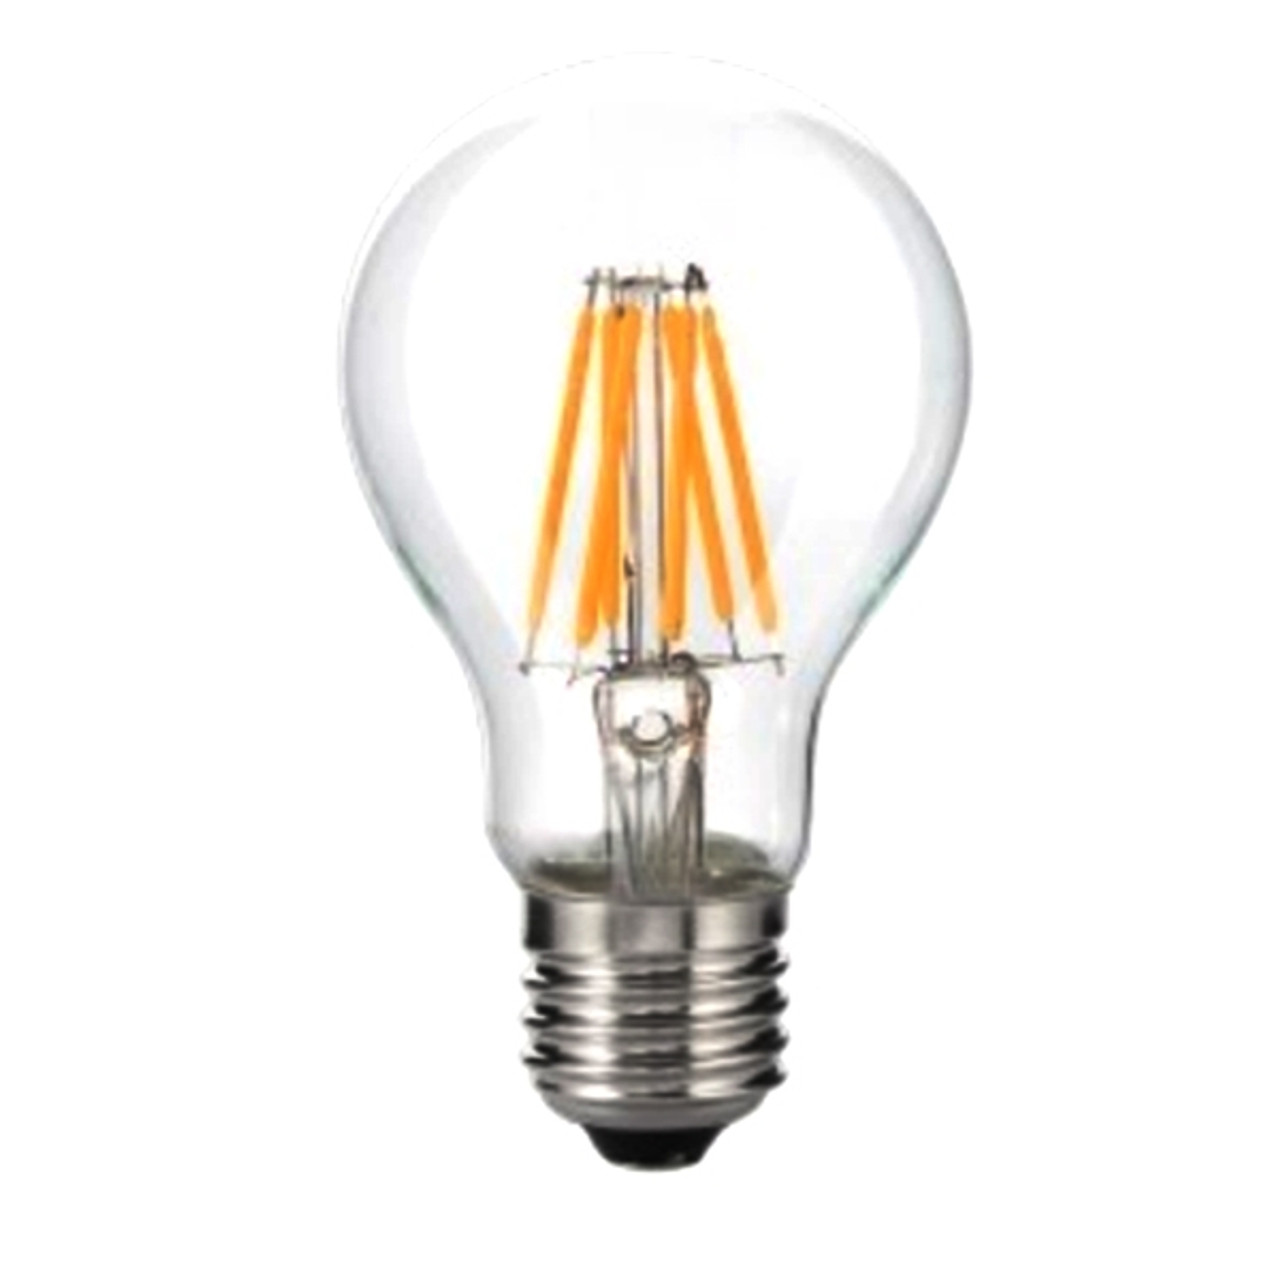 7 Watt Filament Bulb E12 Base Lamp